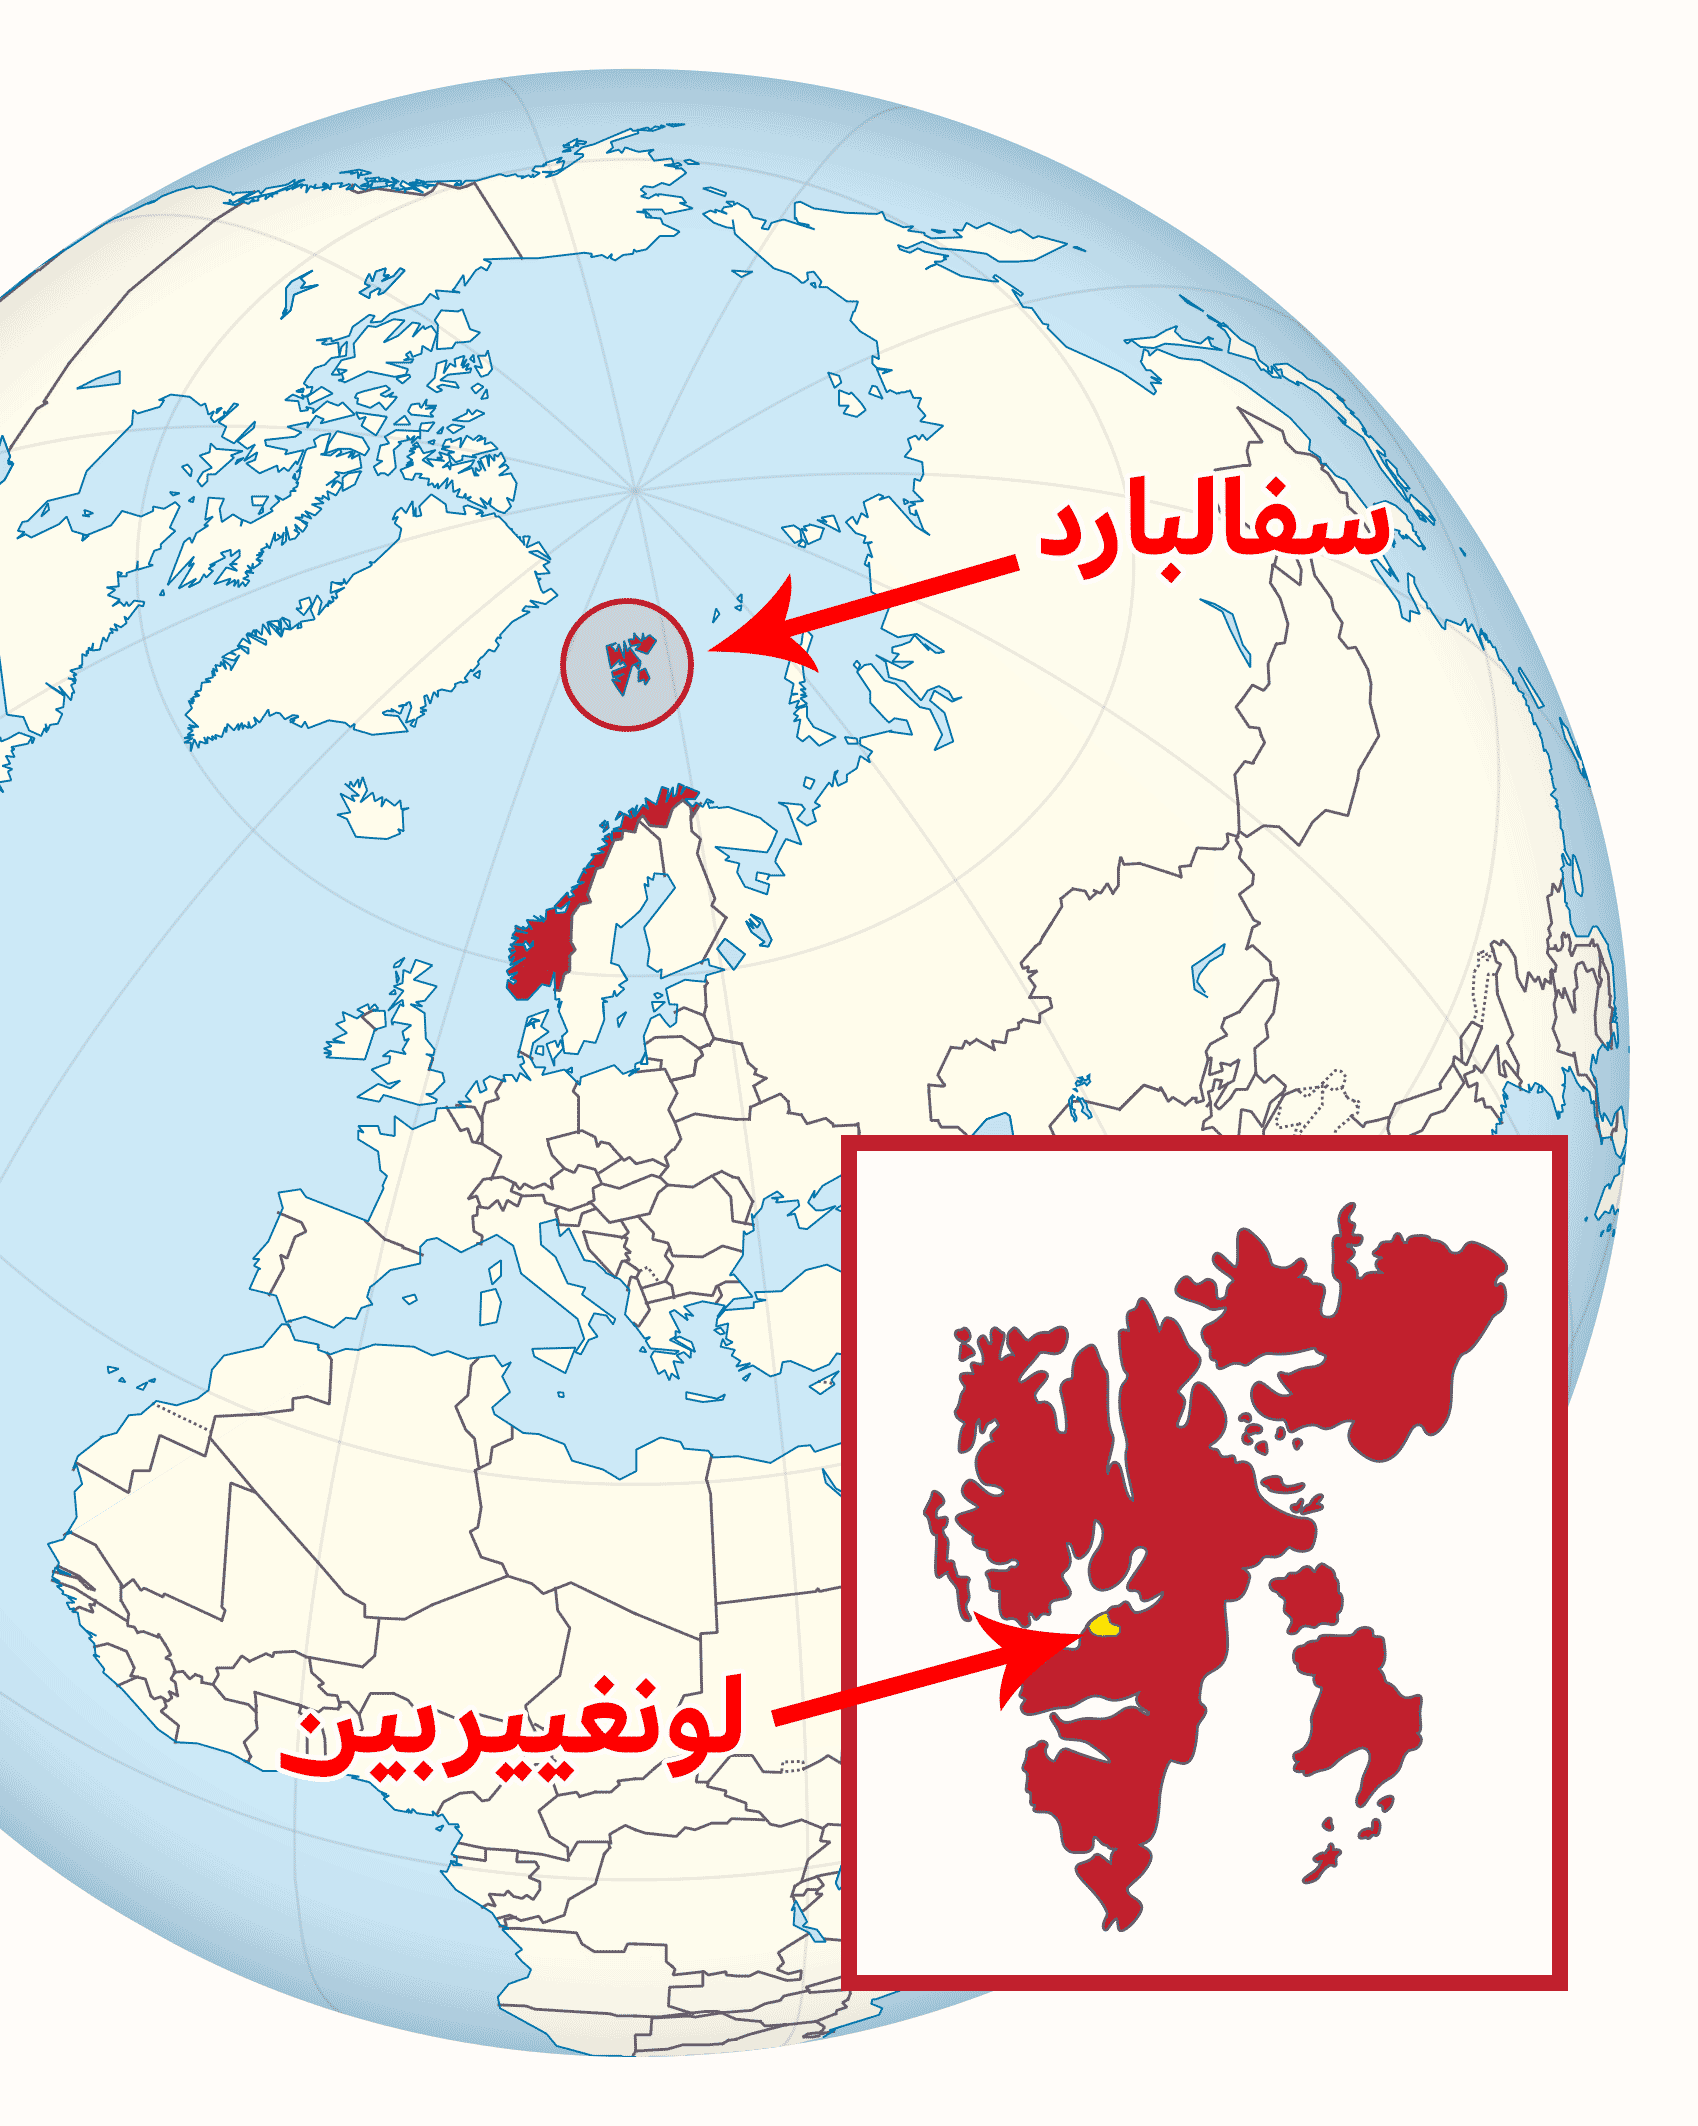 بلدة لونغييربين في سفالبارد في النرويج أقرب بلدة للقطب الشمالي في العالم.